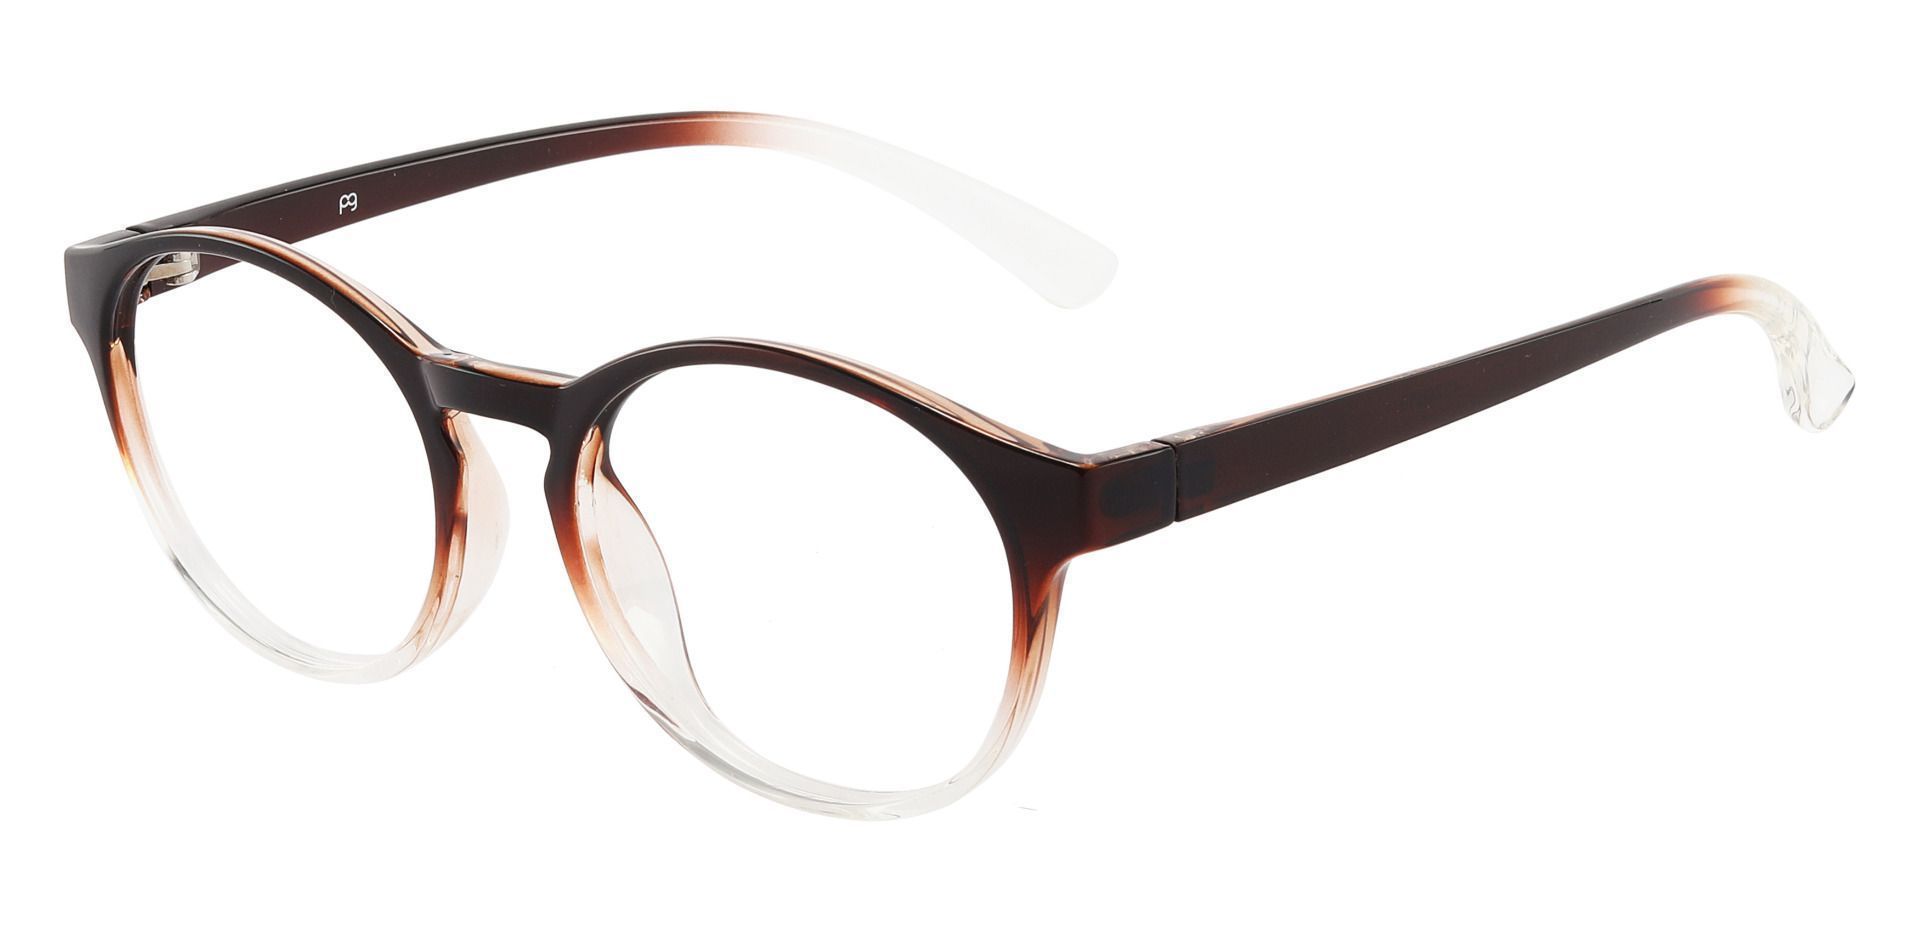 Safari Oval Prescription Glasses - Brown